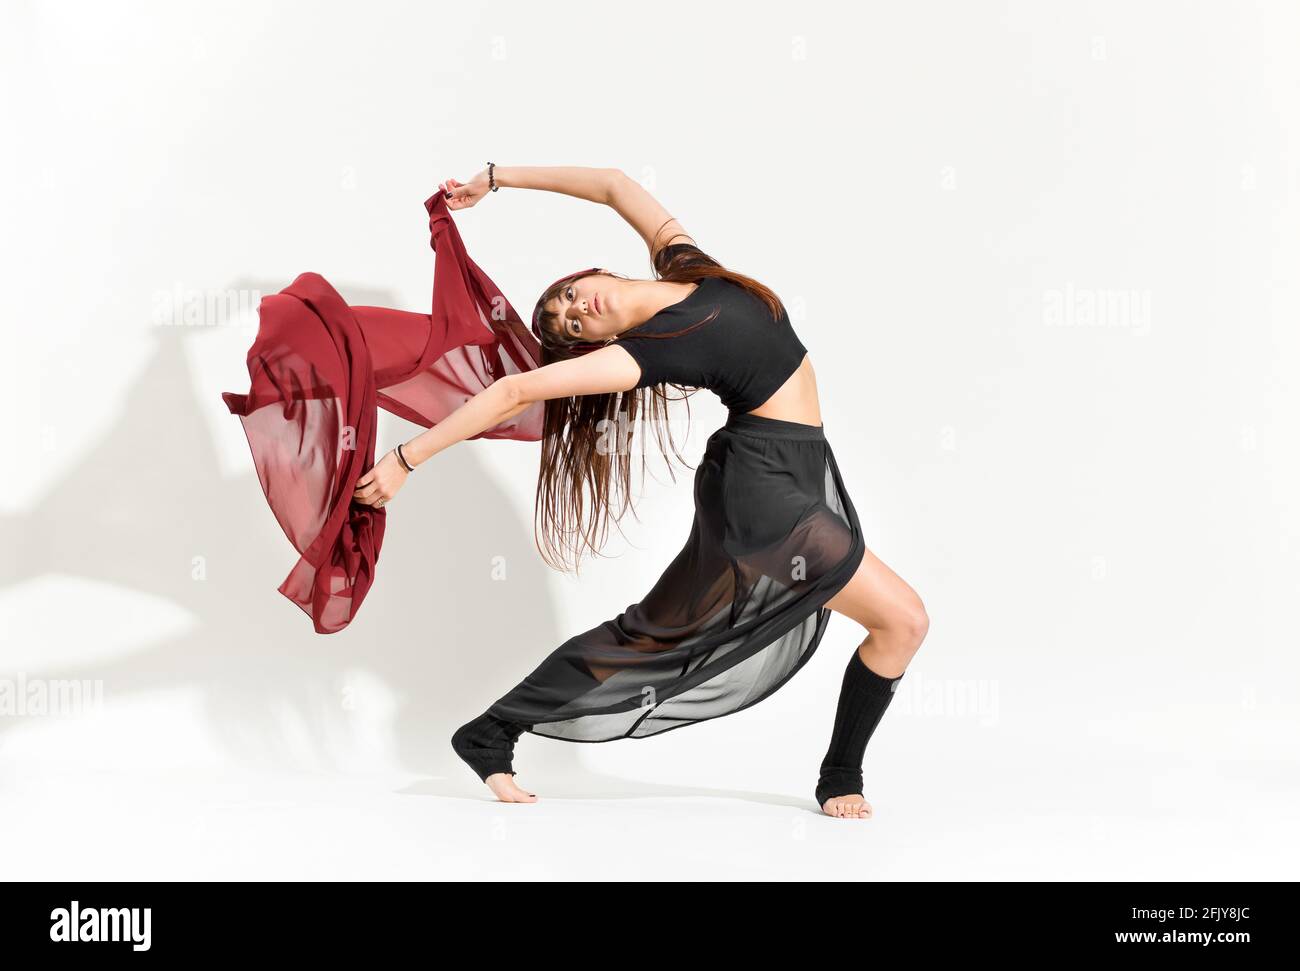 Anmutiger Tanz, der eine Ina Bauer-Eiskunstlauf-Pose vorführt Ein filmiges schwarzes Kostüm, das ein Rechteck aus rotem Stoff schwebt Hinter ihr auf weiß mit Schatten Stockfoto